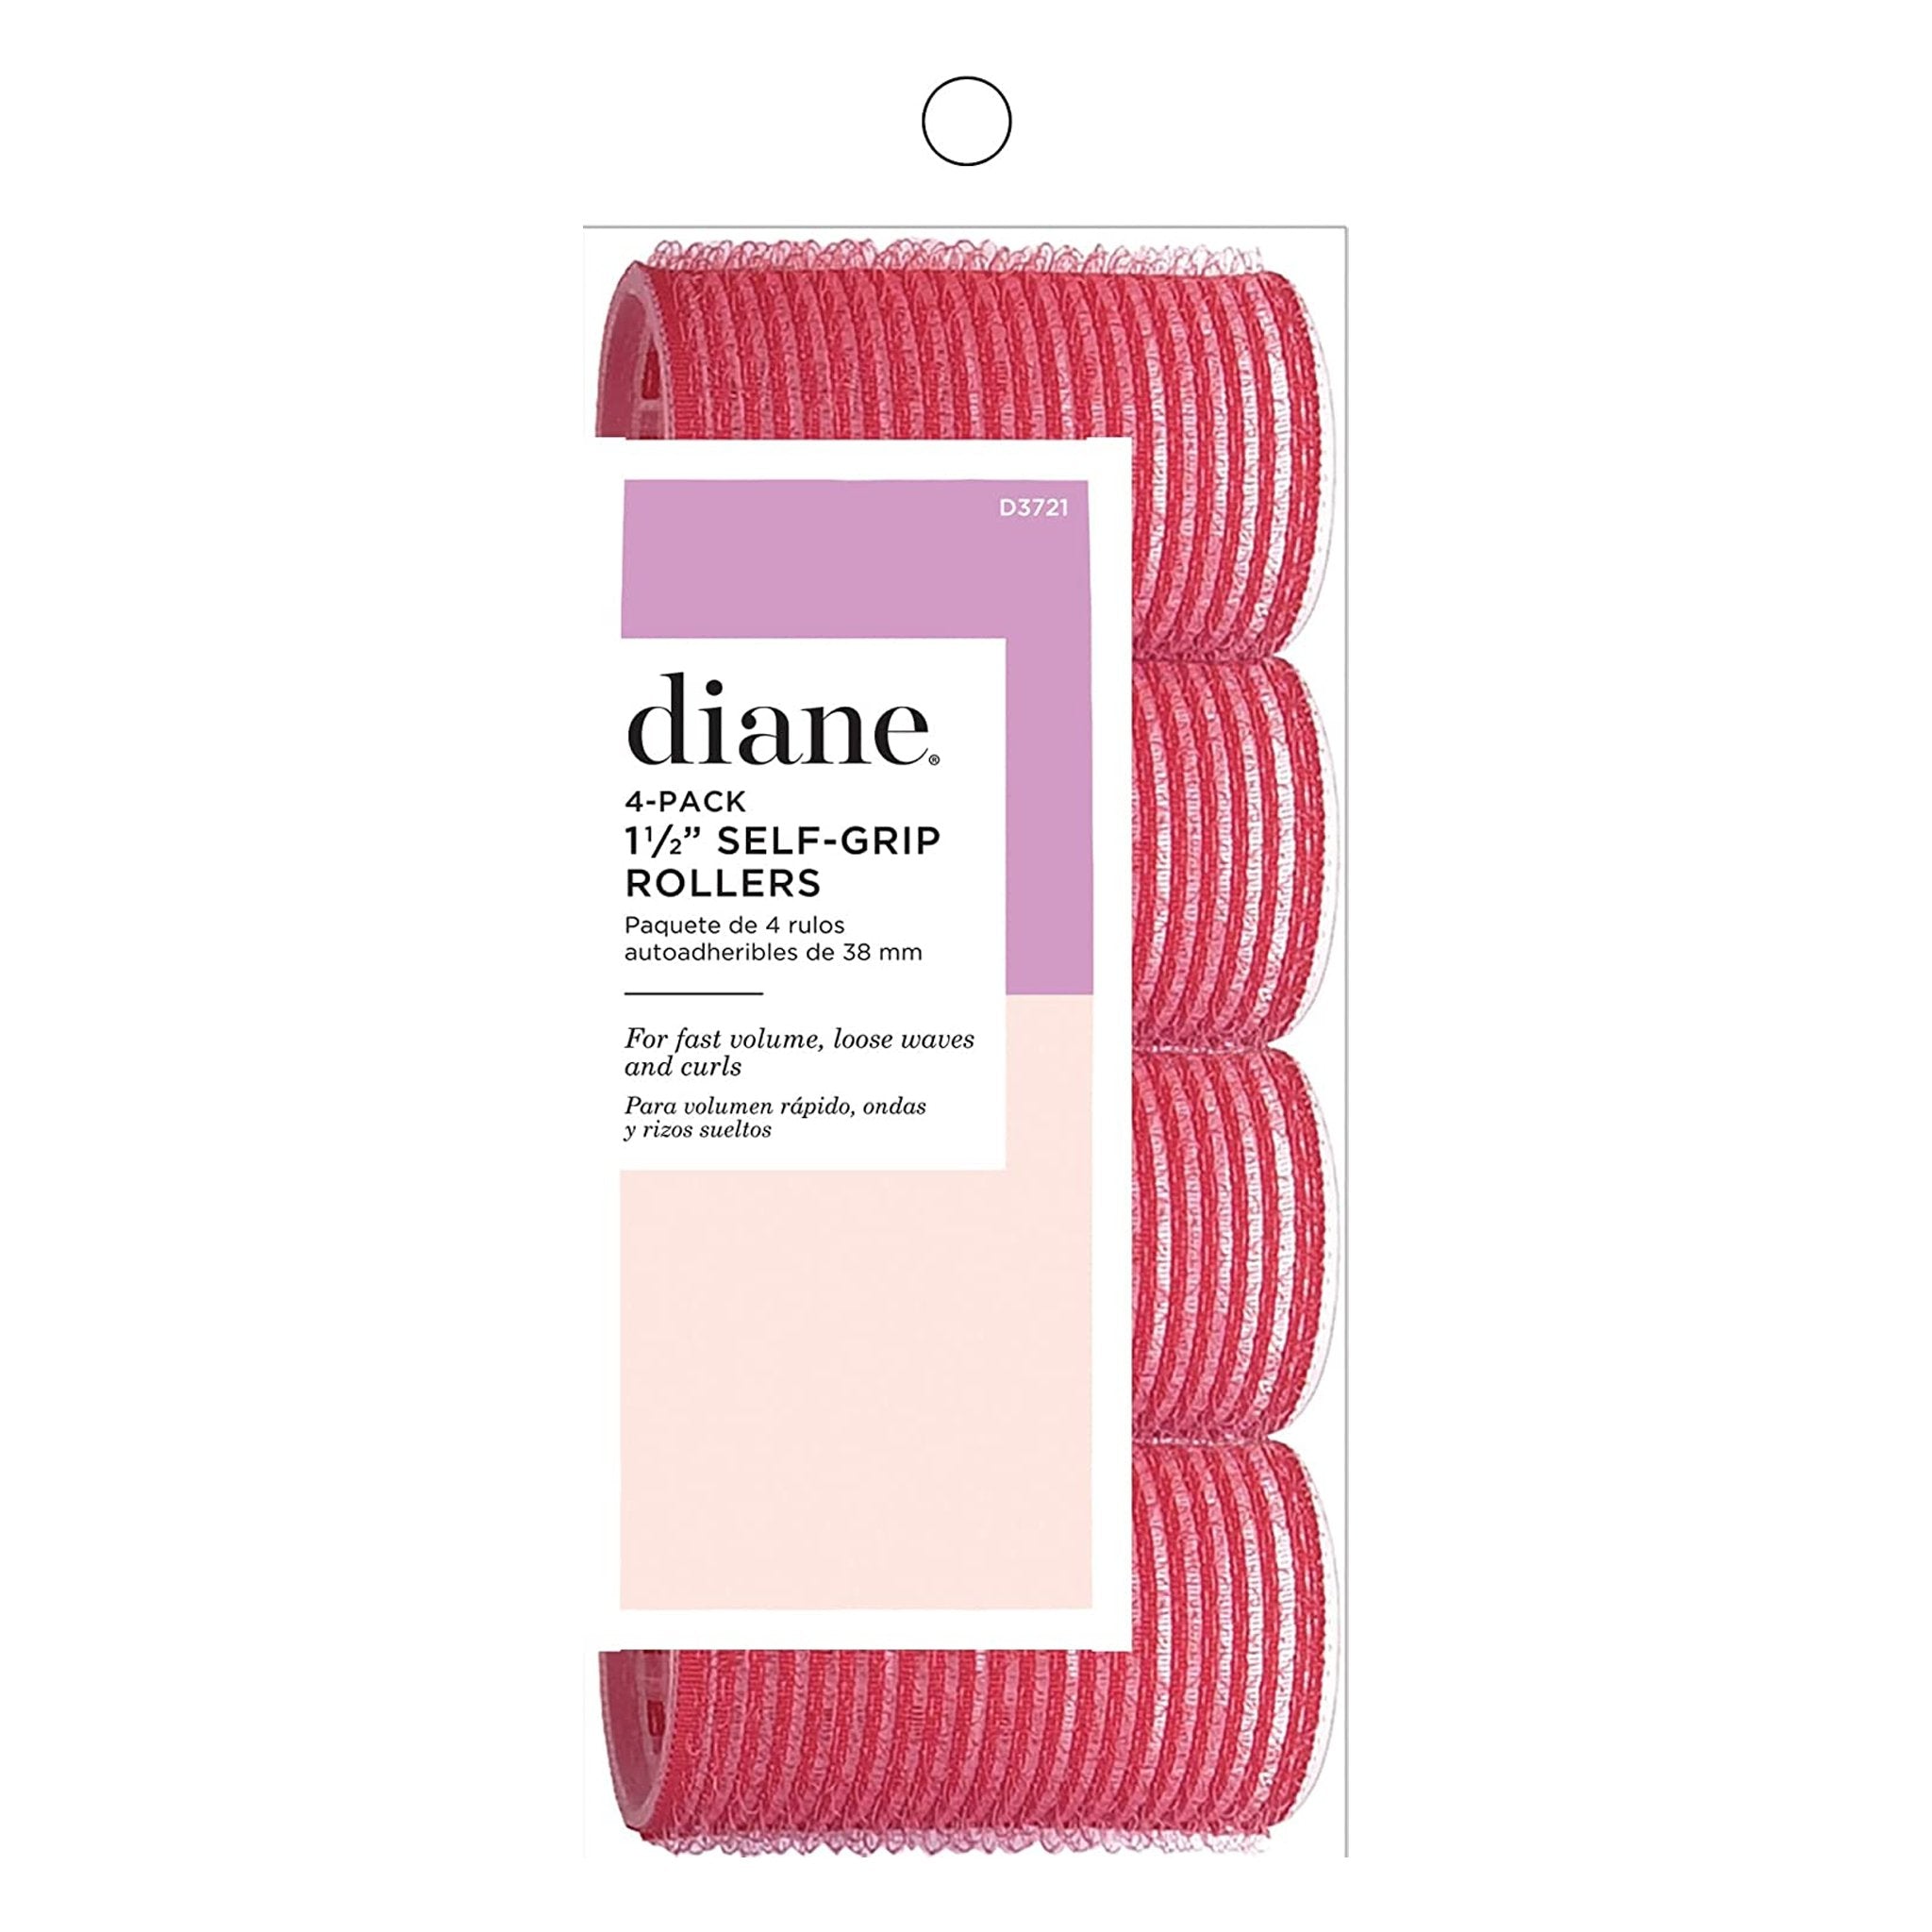 Diane. Rouleaux en Velcro Rouges 1 1/2" - Pqt. 4 - Concept C. Shop